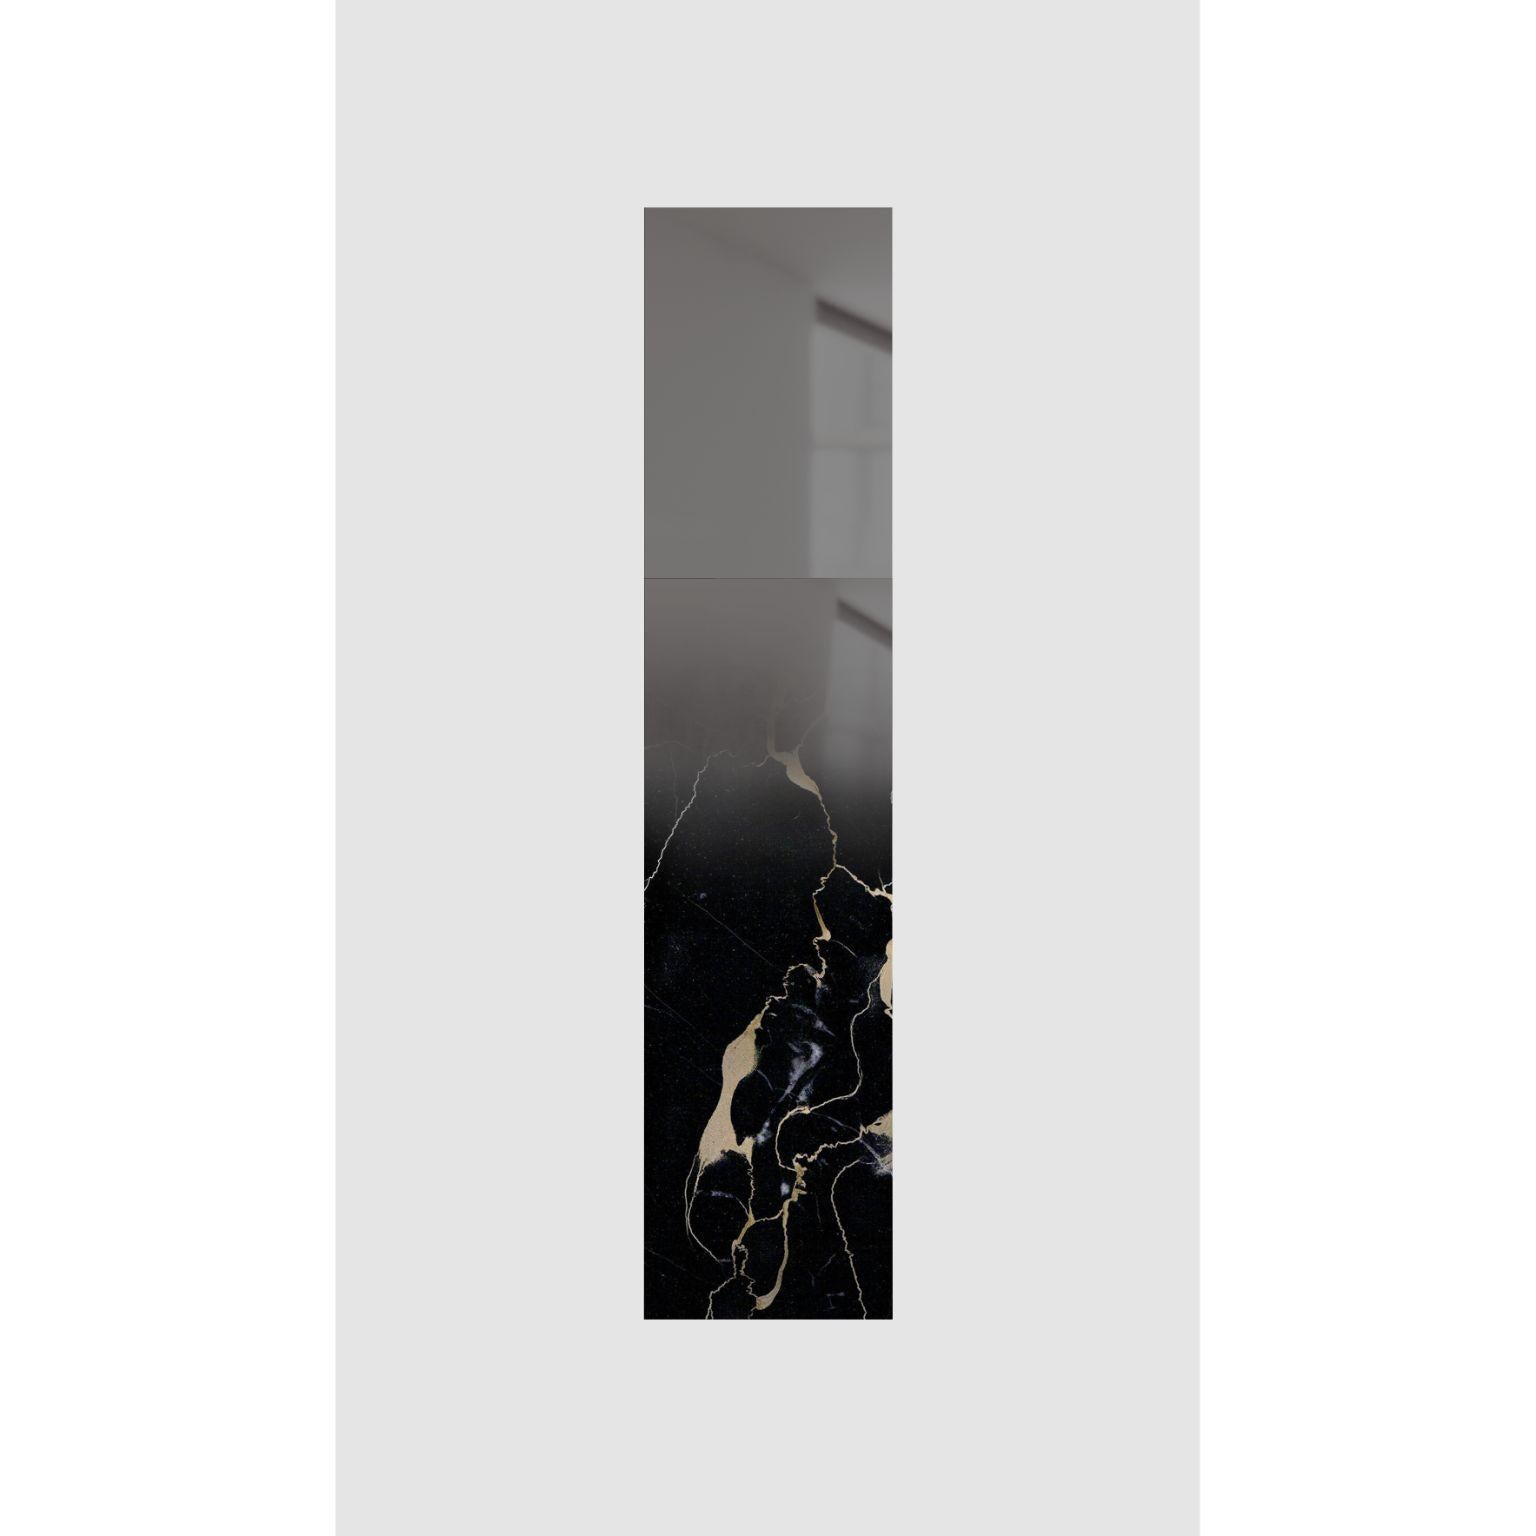 Miroir noir par Formaminima
Édition limitée
Dimensions : D 5 x L 35 x H 157,5 cm
MATERIAL : Marbre Portoro Gold extra-plat, couches de cristal gris foncé polies à la main avec finition miroir en fondu appliqué à la main Supports métalliques